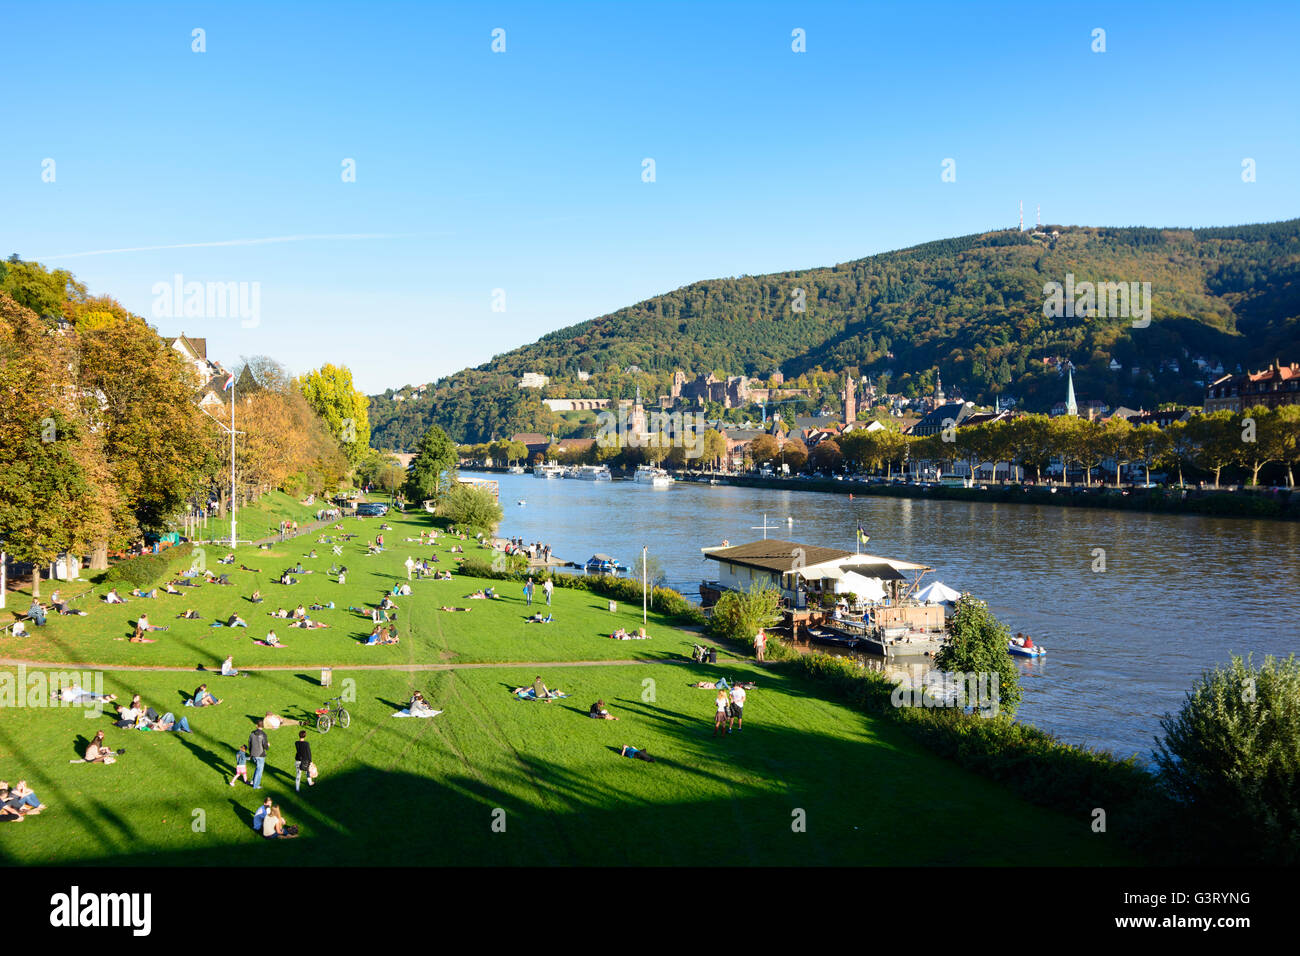 Fluss Neckar, Sonnenanbeter auf dem Neckar Wiesen und mit Blick auf die Altstadt mit dem Schloss und Berg Königstuhl, Deutschland, B Stockfoto